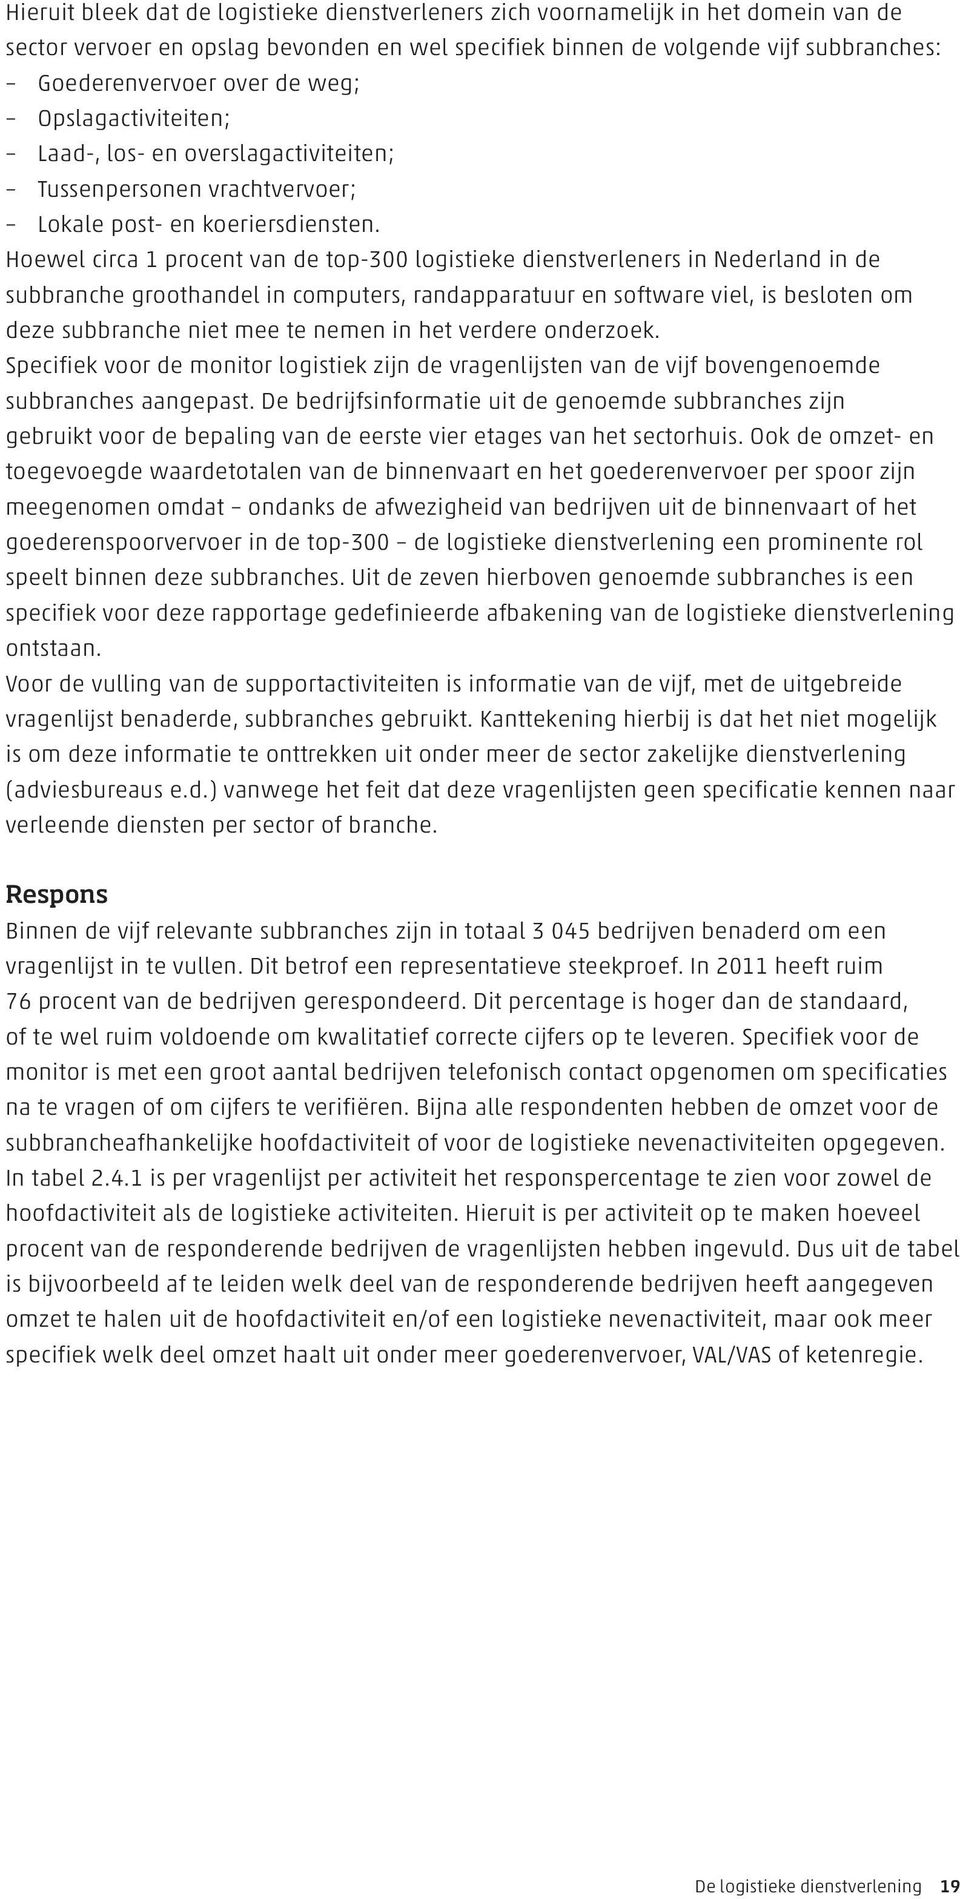 Hoewel circa 1 procent van de top-300 logistieke dienstverleners in Nederland in de subbranche groothandel in computers, randapparatuur en software viel, is besloten om deze subbranche niet mee te